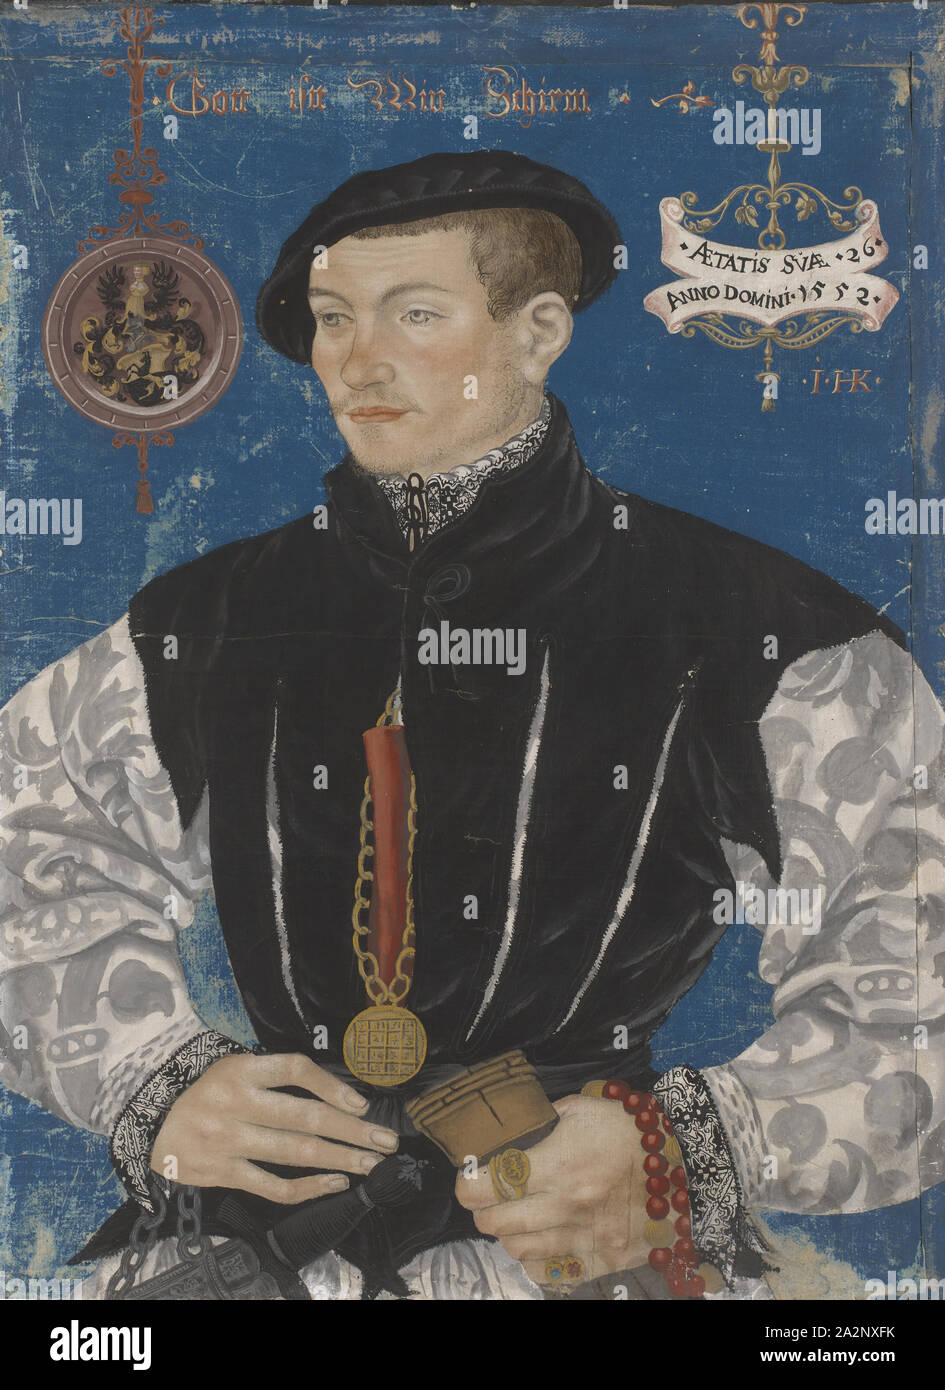 Portrait de Hans Rispach, 1552, tempera sur papier, monté sur toile, 51 x 38 cm, signé à droite : • • • HK [je] ligaturée, daté sur la bande : • • • ATTATiS SVAE 26 Anno Domini 1552 • •, en haut de l'écran la devise : Dieu • • l'écran est Min, Hans Hug Kluber, Bâle Bâle 1578-1535/36 Banque D'Images